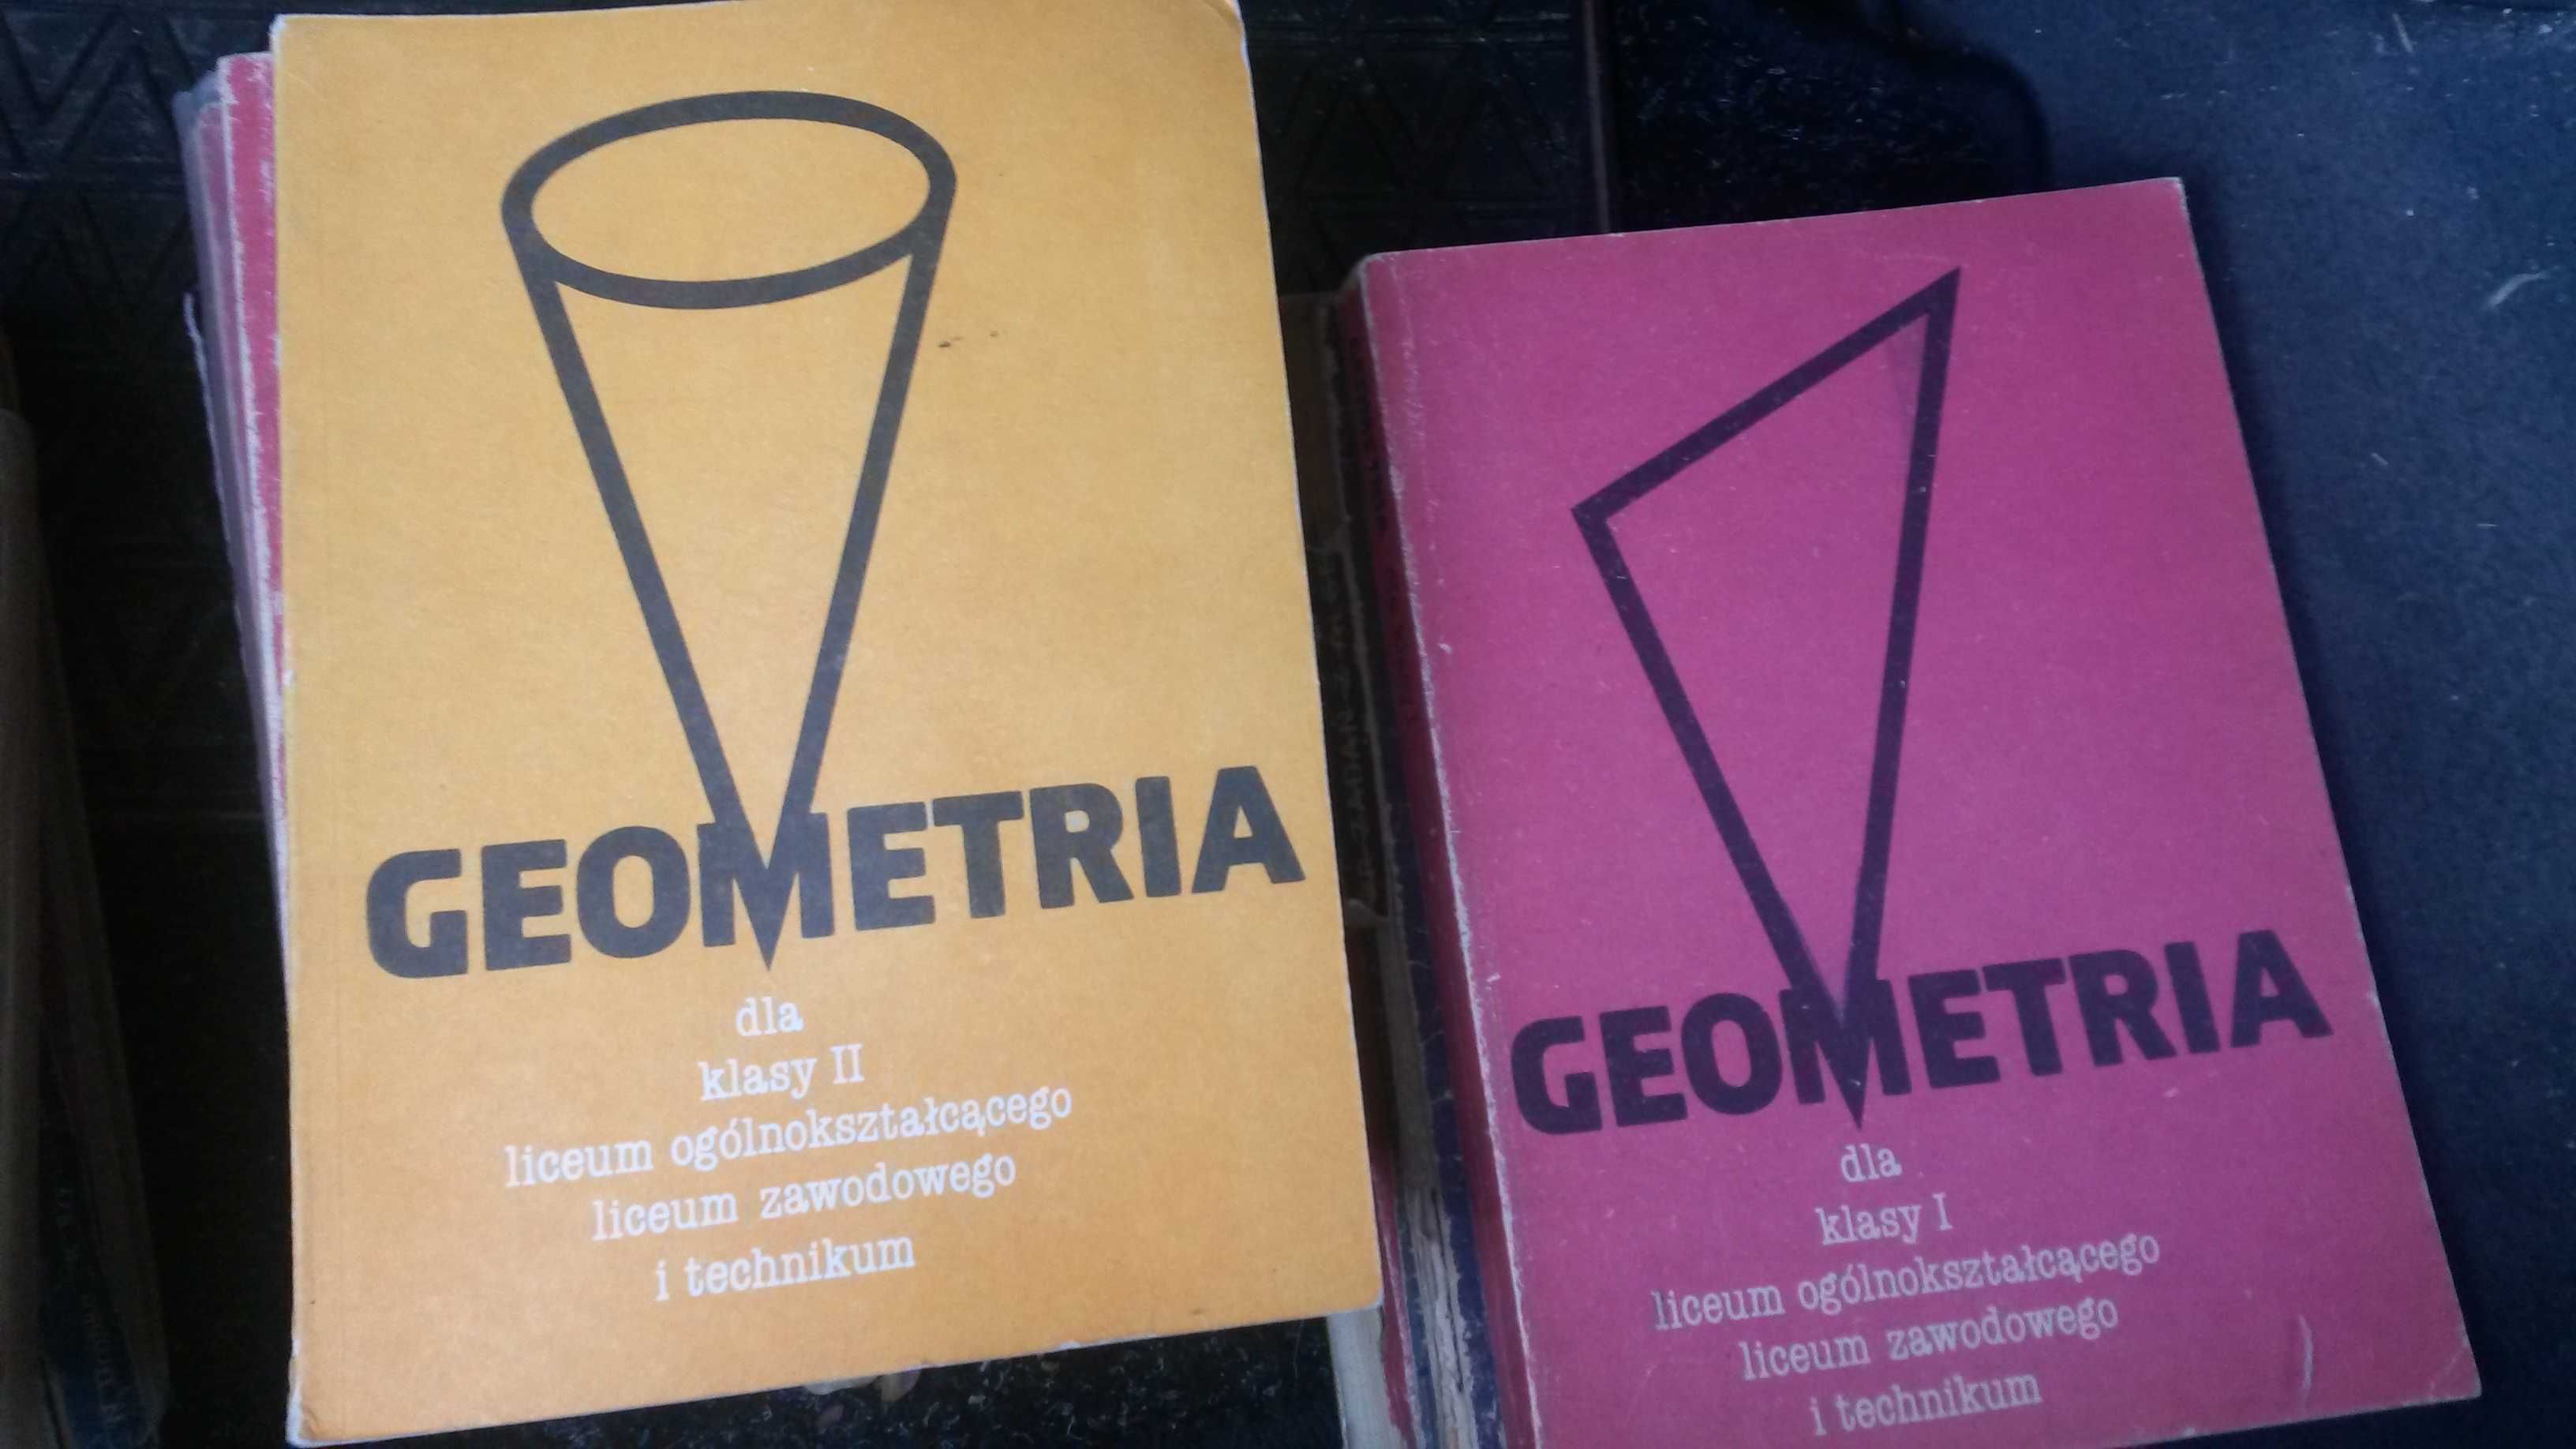 Podreczniki ksiażki matematyka algebra geometria zbiór zadań stare wyd